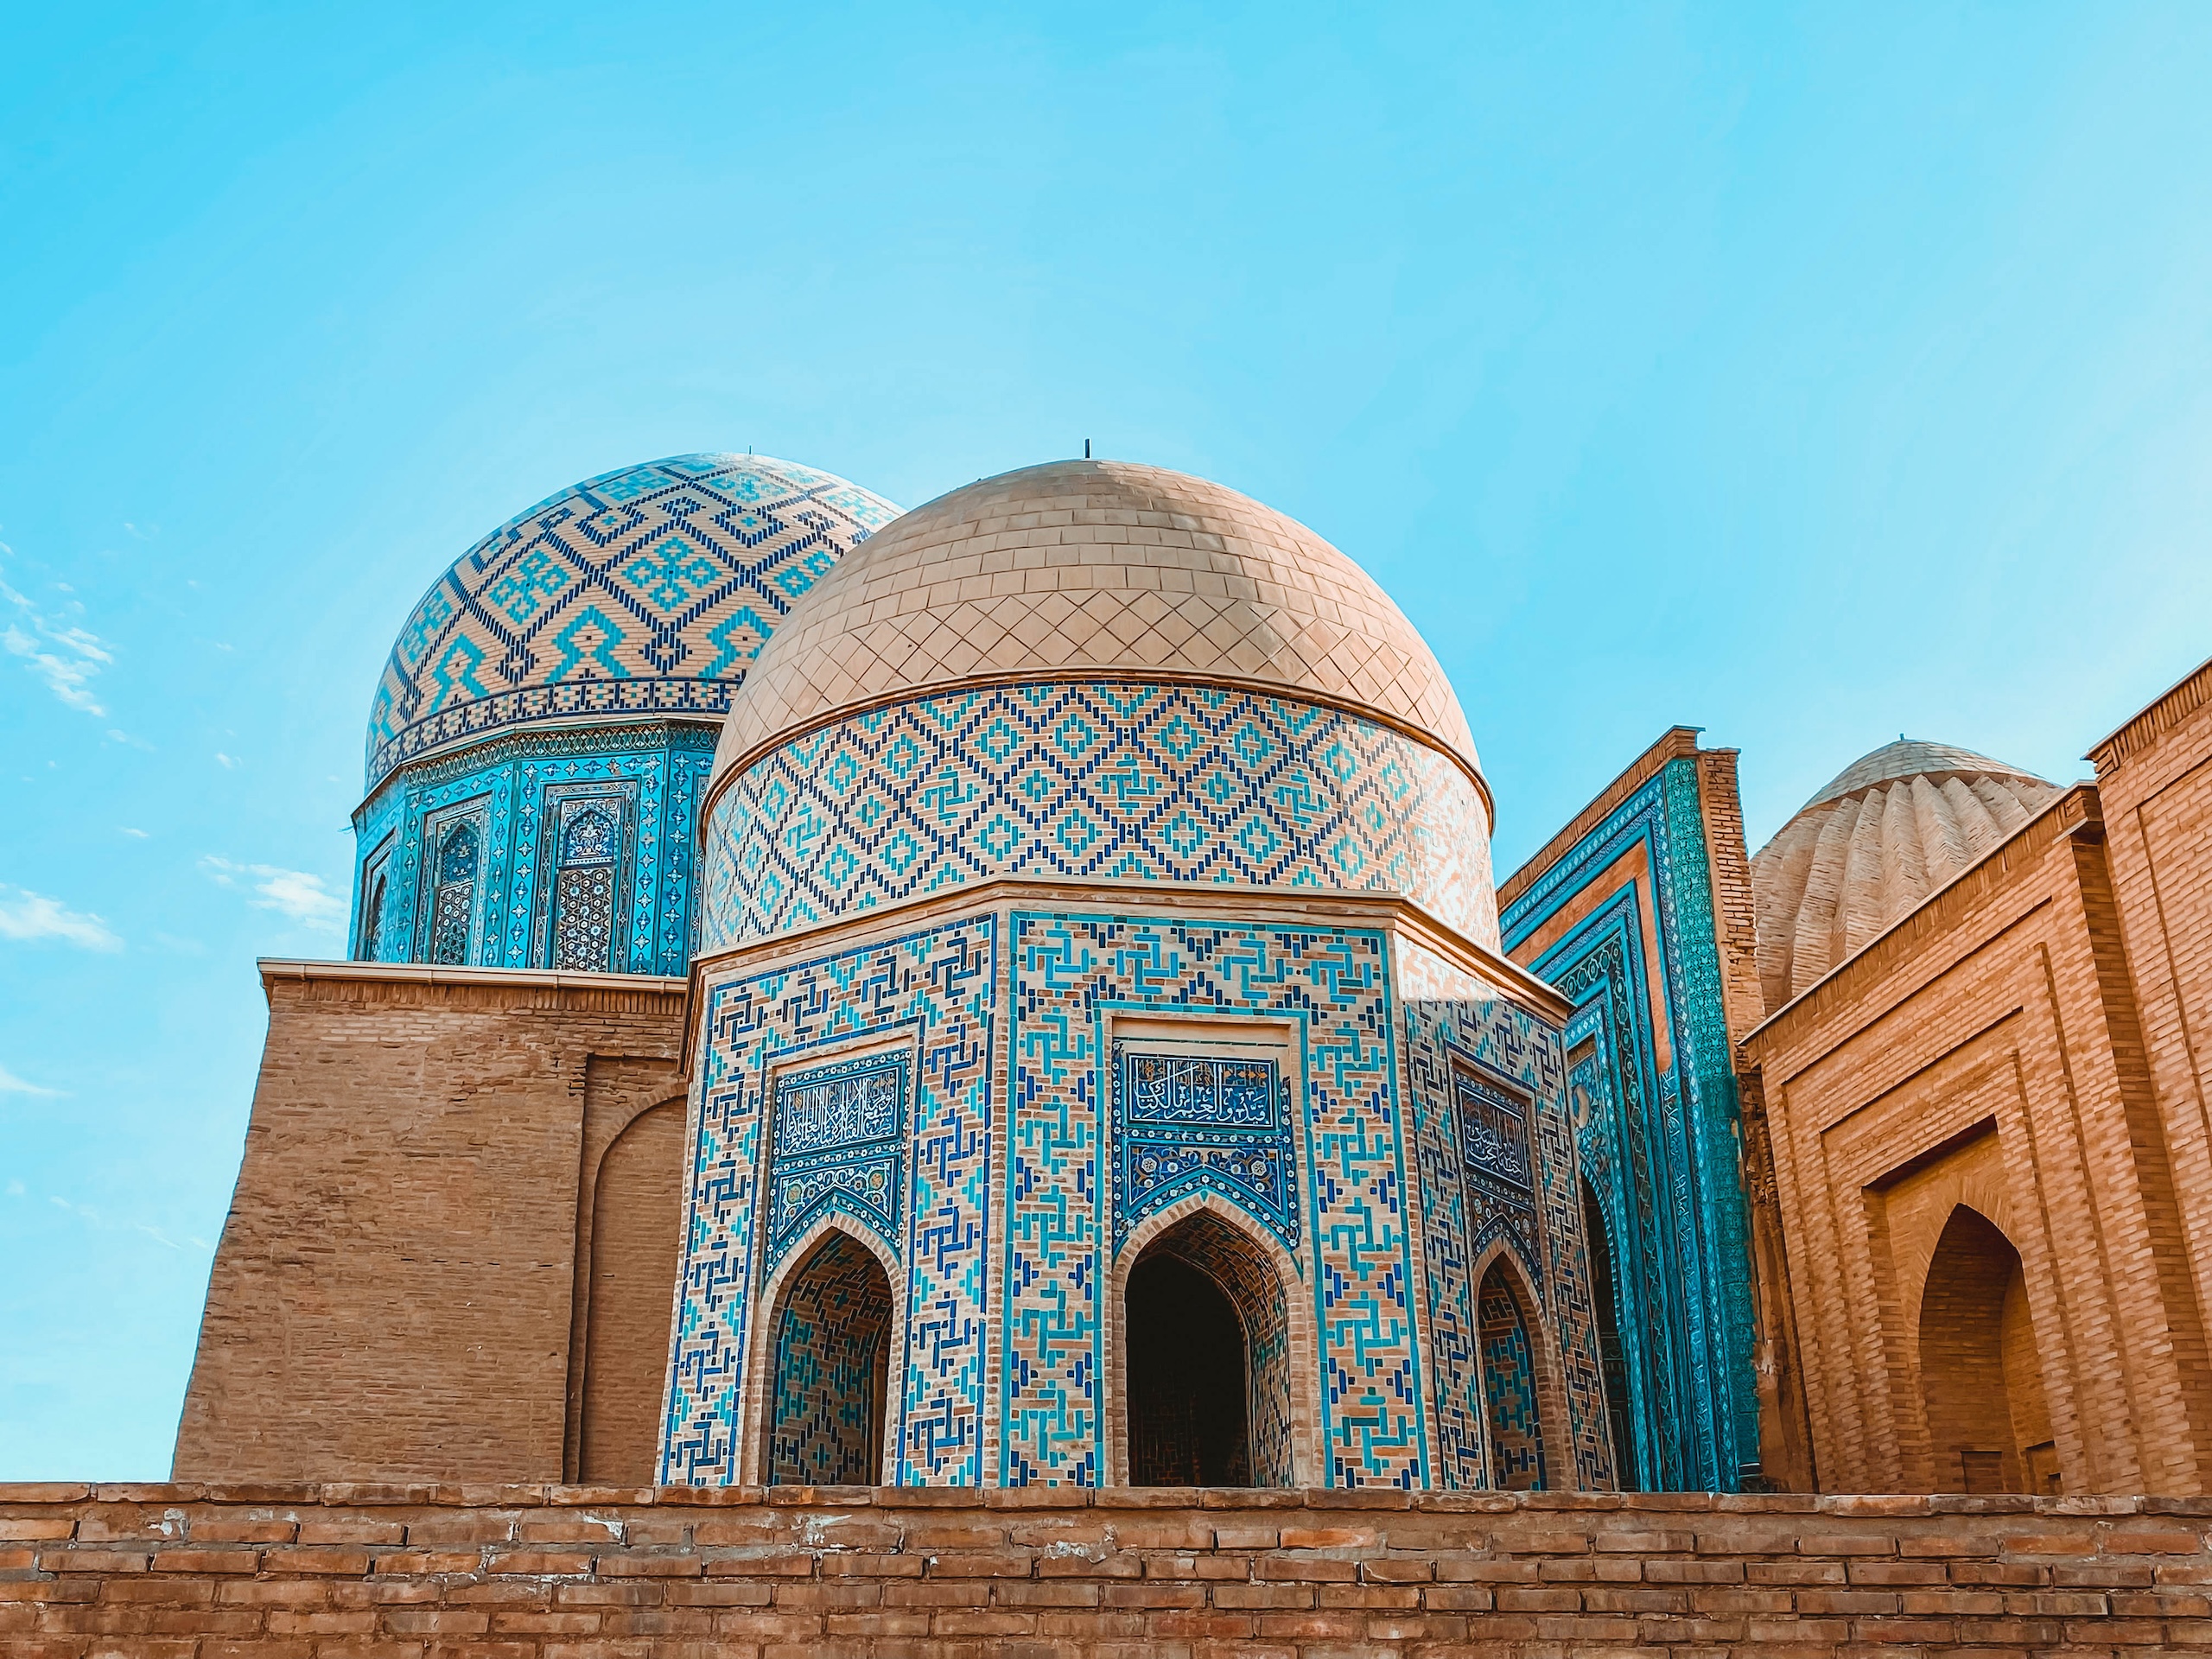 Shah-i-Zinda in Samarkand